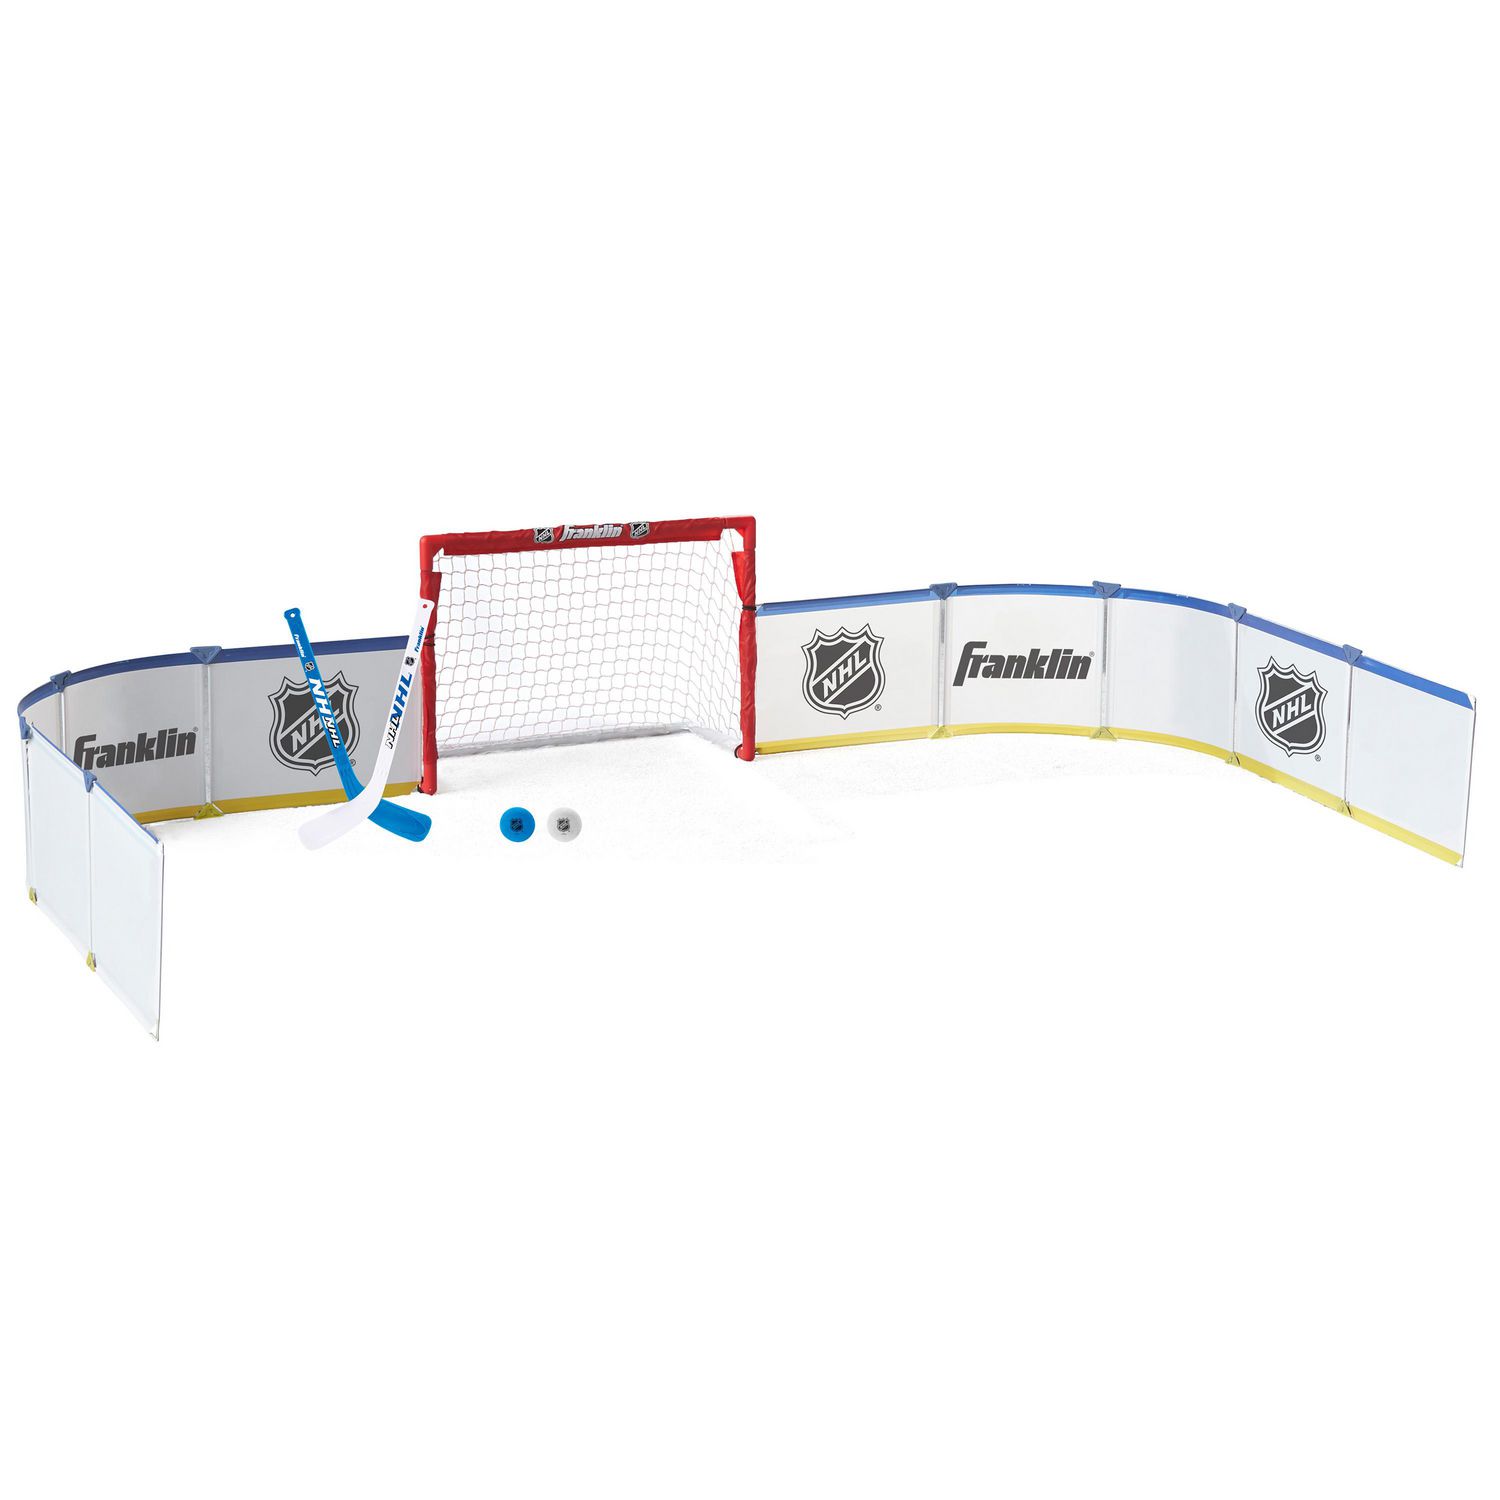 PATIKIL Lot de 3 bandes adhésives de hockey de 2,5 cm x 27 m, ruban adhésif  multifonction pour chaussettes de football, patin à glace, sport